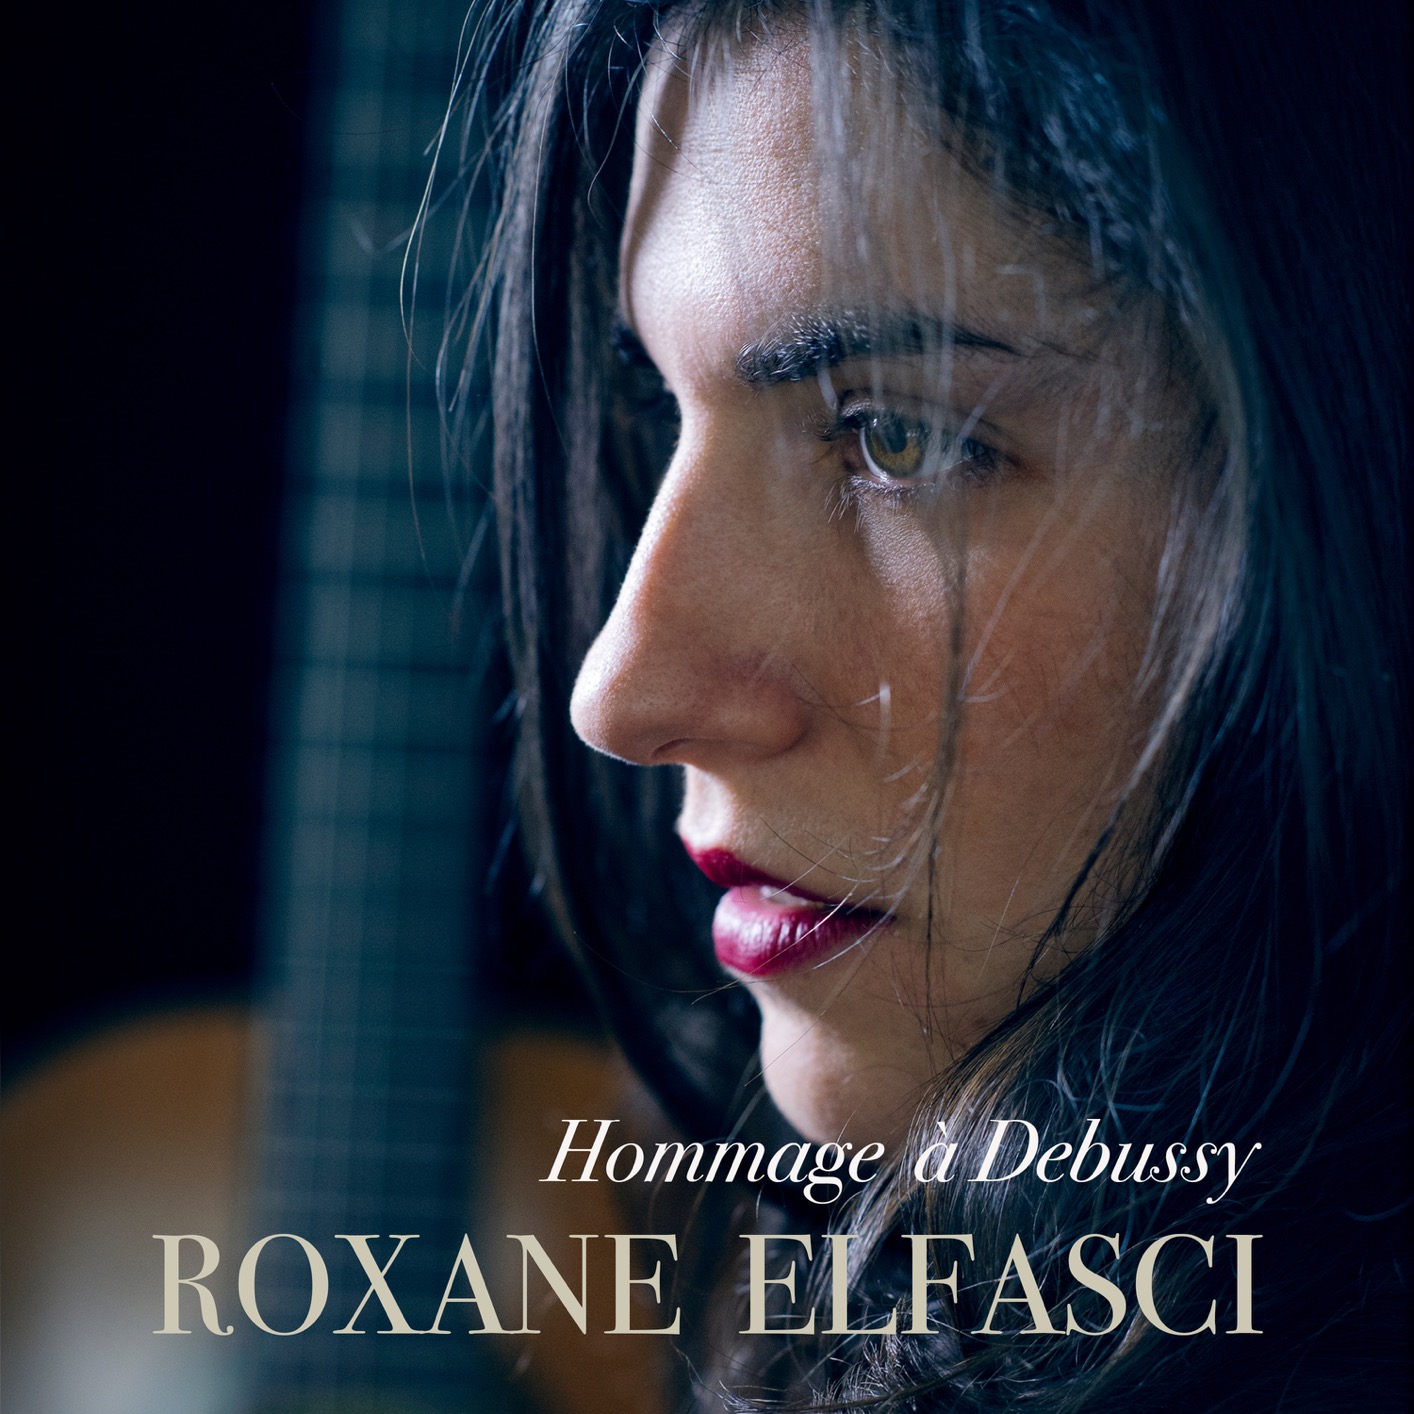 Roxane Elfasci - Hommage a Debussy (2021) [FLAC 24bit/96kHz]